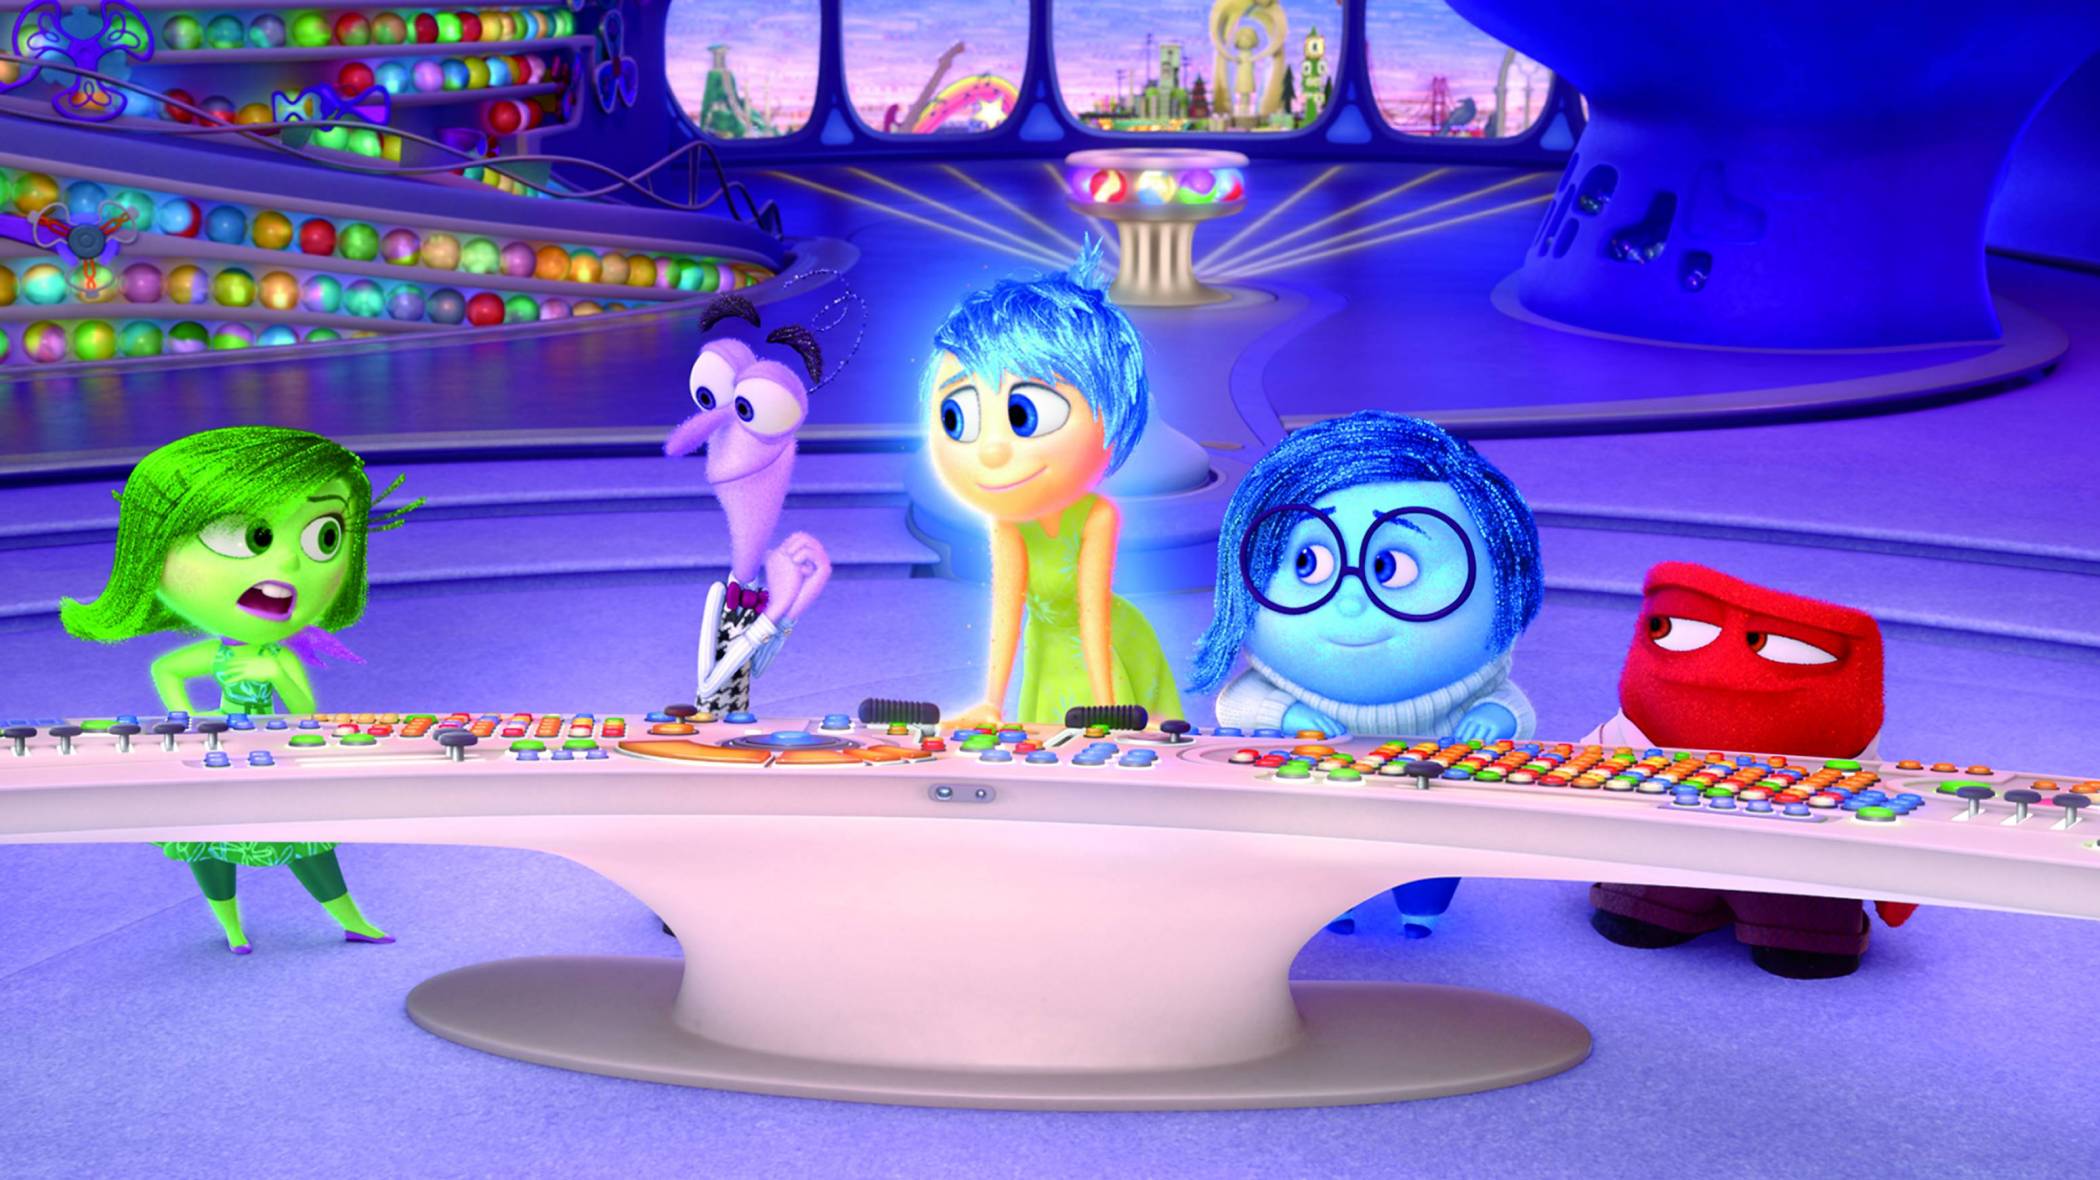 Disney Pixar Fest 2020 - Inside Out [credit: Pixar]